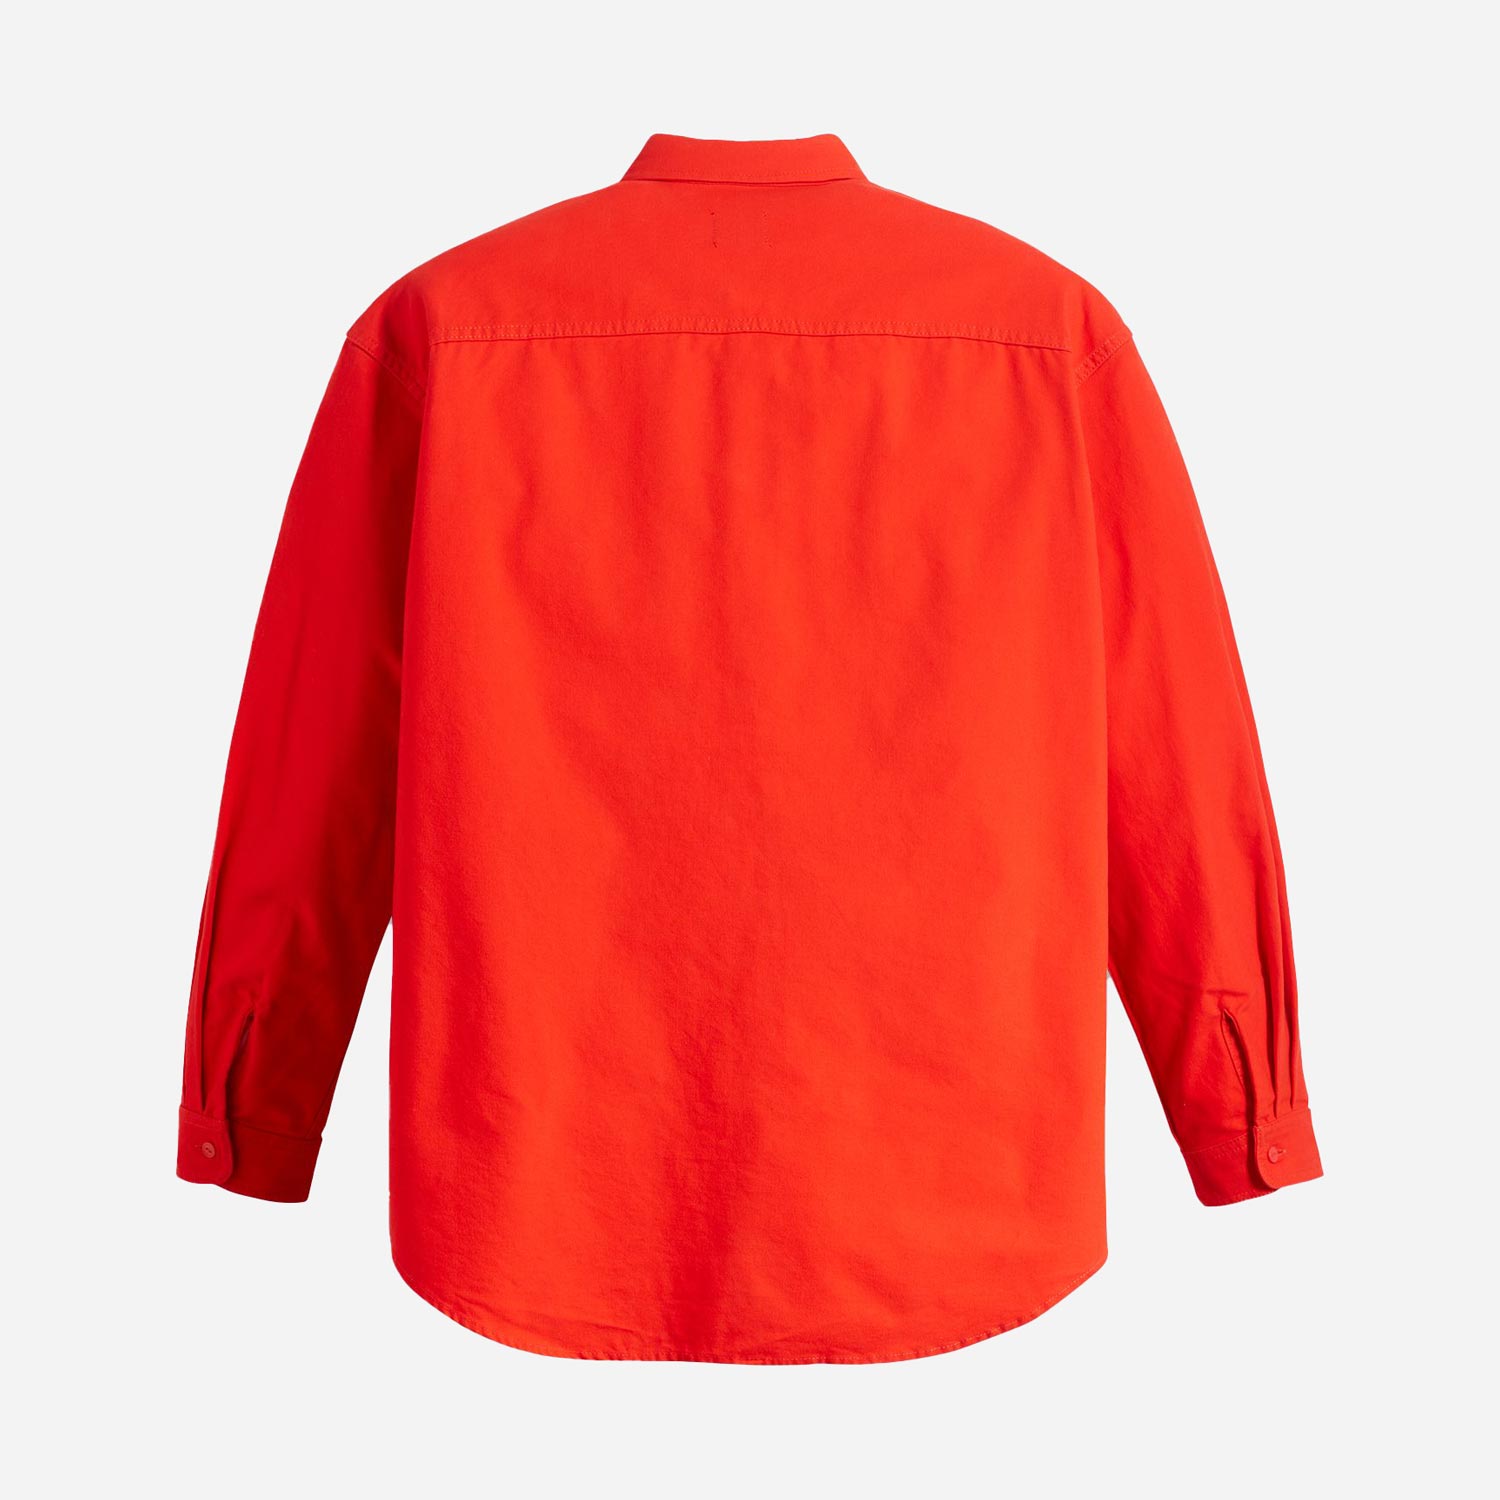 Levis Skate Woven Regular Fit Long Sleeve Shirt - Fiery Red